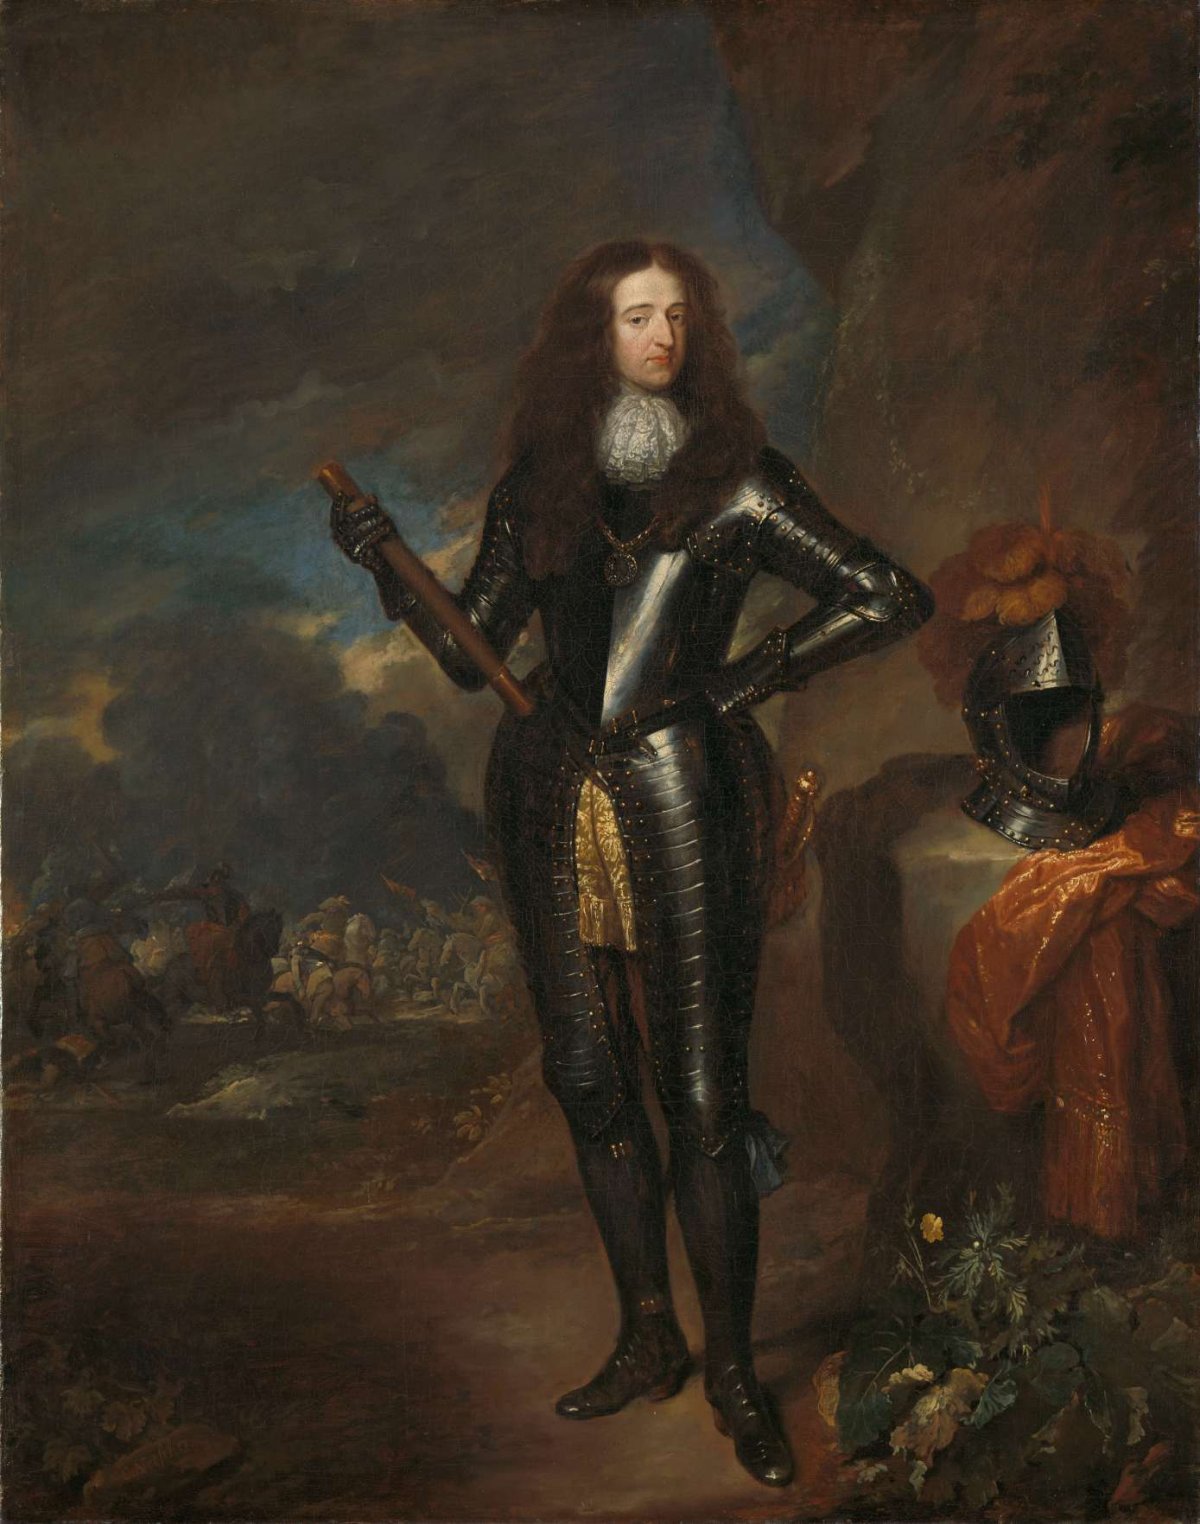 Portrait of William III, Prince of Orange and Stadholder, Caspar Netscher, c. 1680 - c. 1684